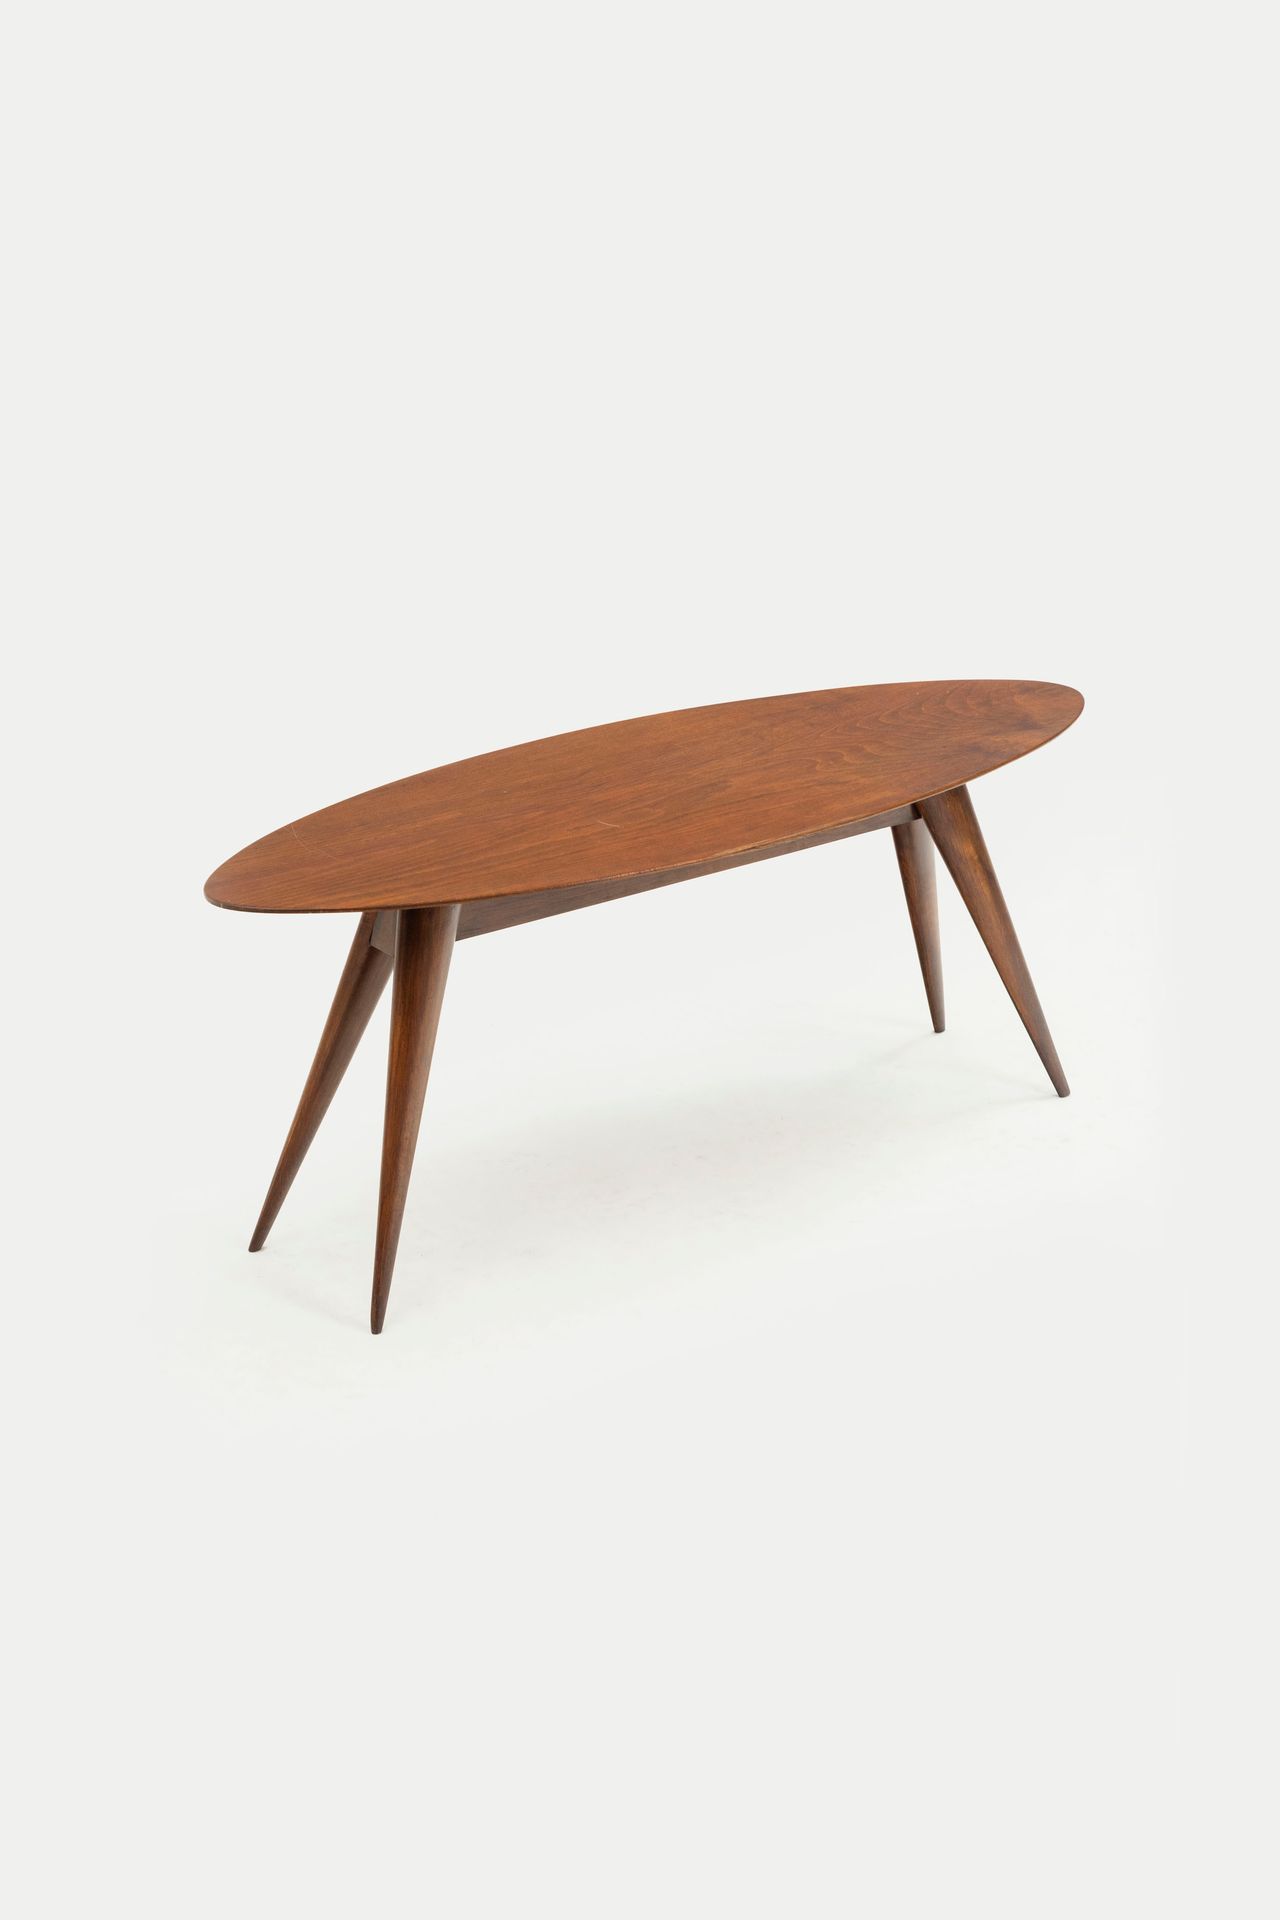 MANIFATTURA ITALIANA Low table. Teak wood, exotic wood veneer plywood. 1960s. 
C&hellip;